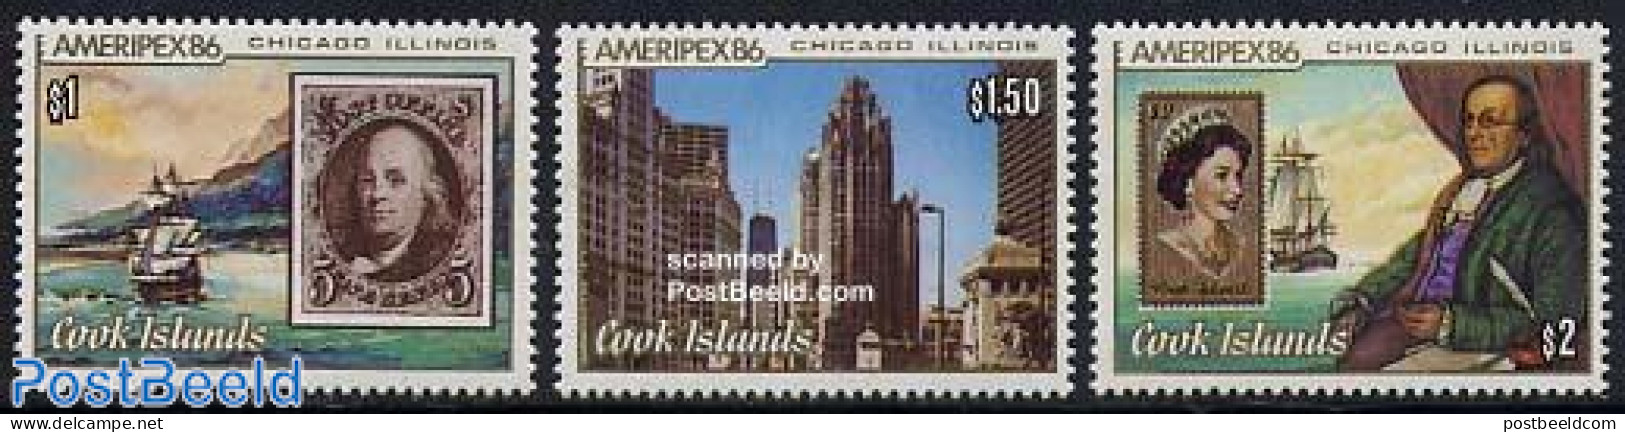 Cook Islands 1986 Ameripex 3v, Mint NH, Transport - Stamps On Stamps - Ships And Boats - Briefmarken Auf Briefmarken